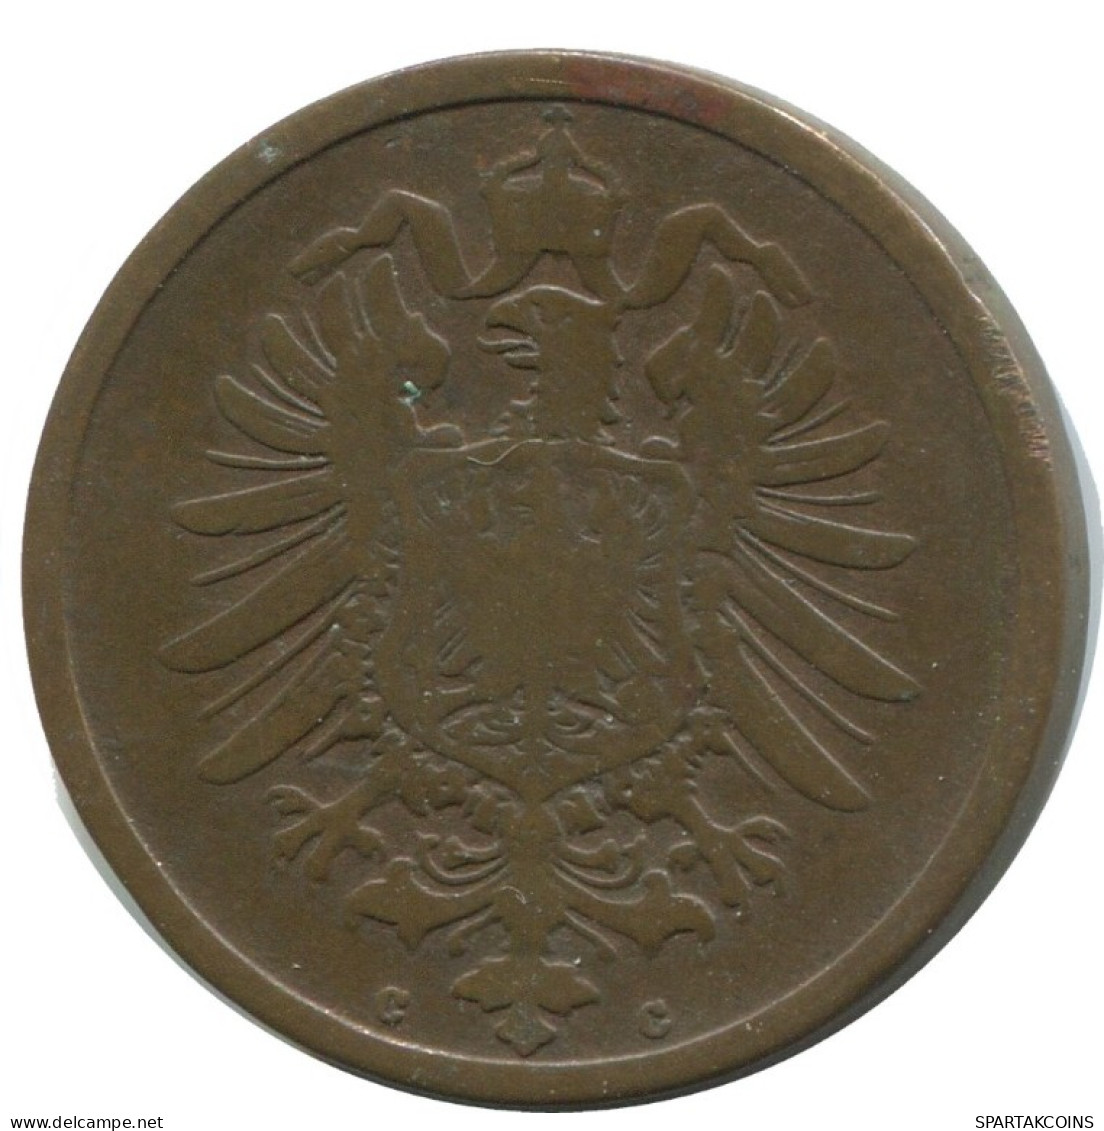 2 PFENNIG 1874 C GERMANY Coin #AD465.9.U.A - 2 Pfennig